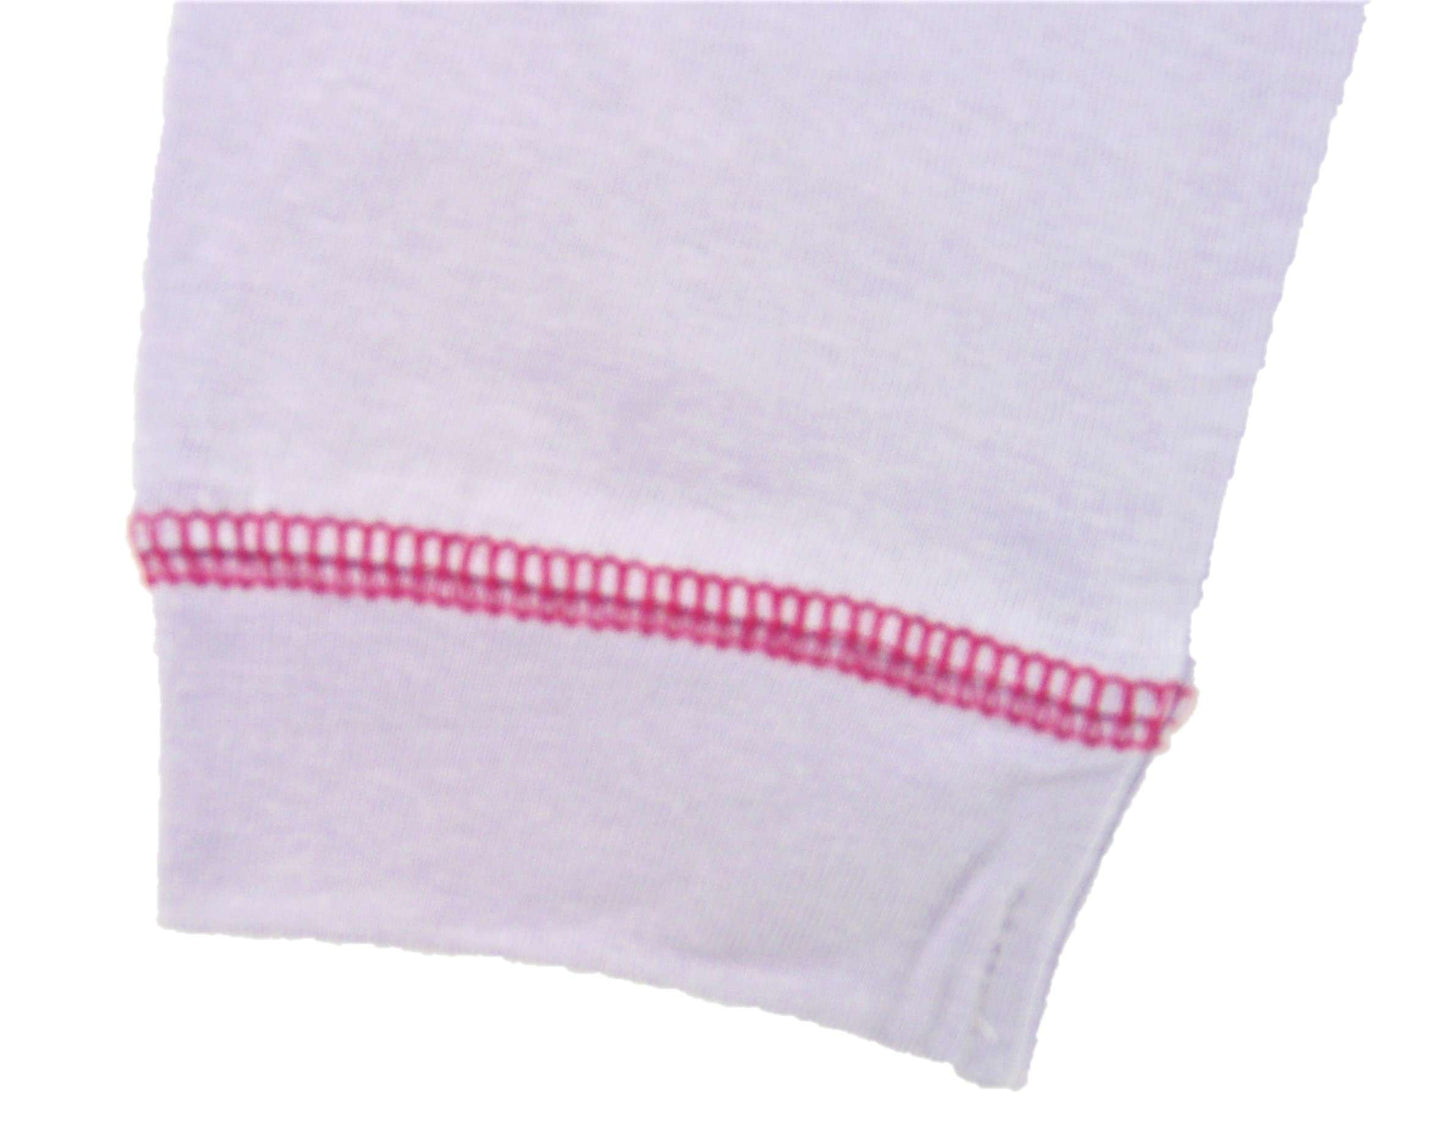 Paw Patrol Toddler Girl’s Cotton Pyjamas, 1-5 Years, Stocking Filler Gift Idea